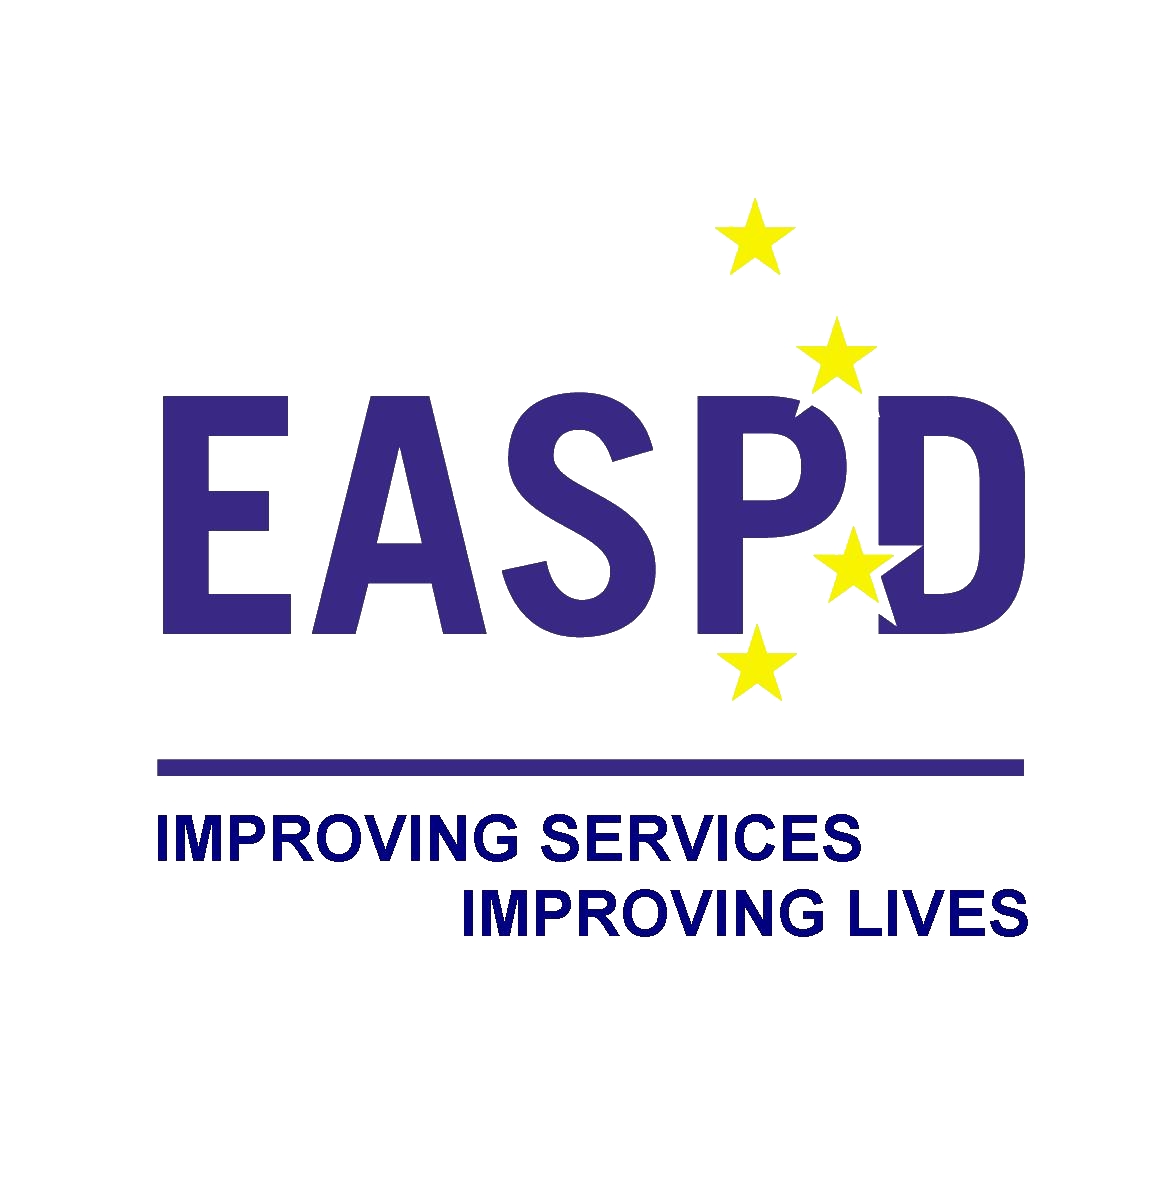 logo EASPD. siglas en azul y estrellas amarillas simulando la bandera europea